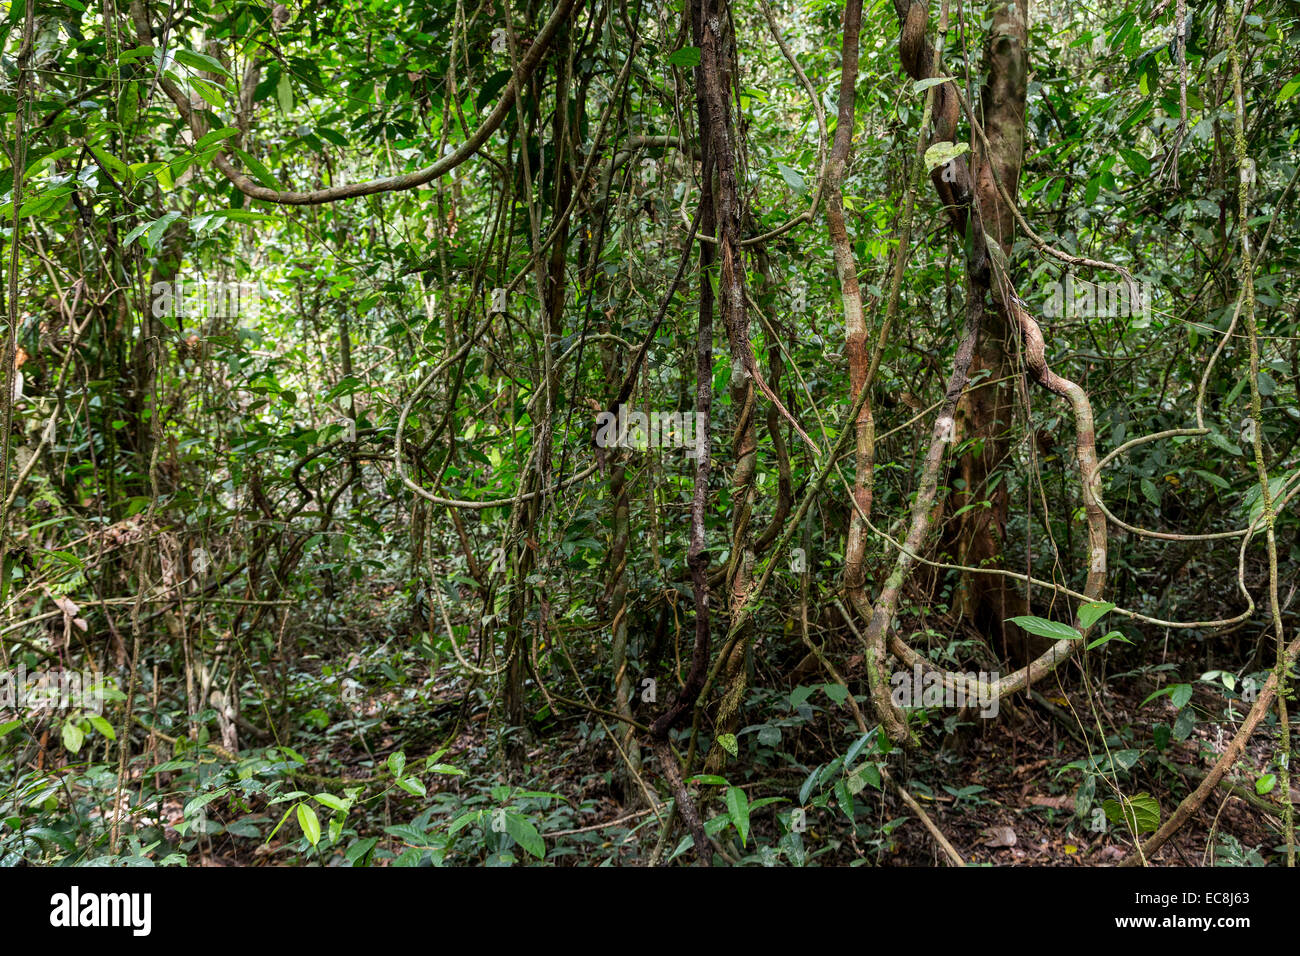 Dense rainforest jungle, Mulu, Malaysia Stock Photo